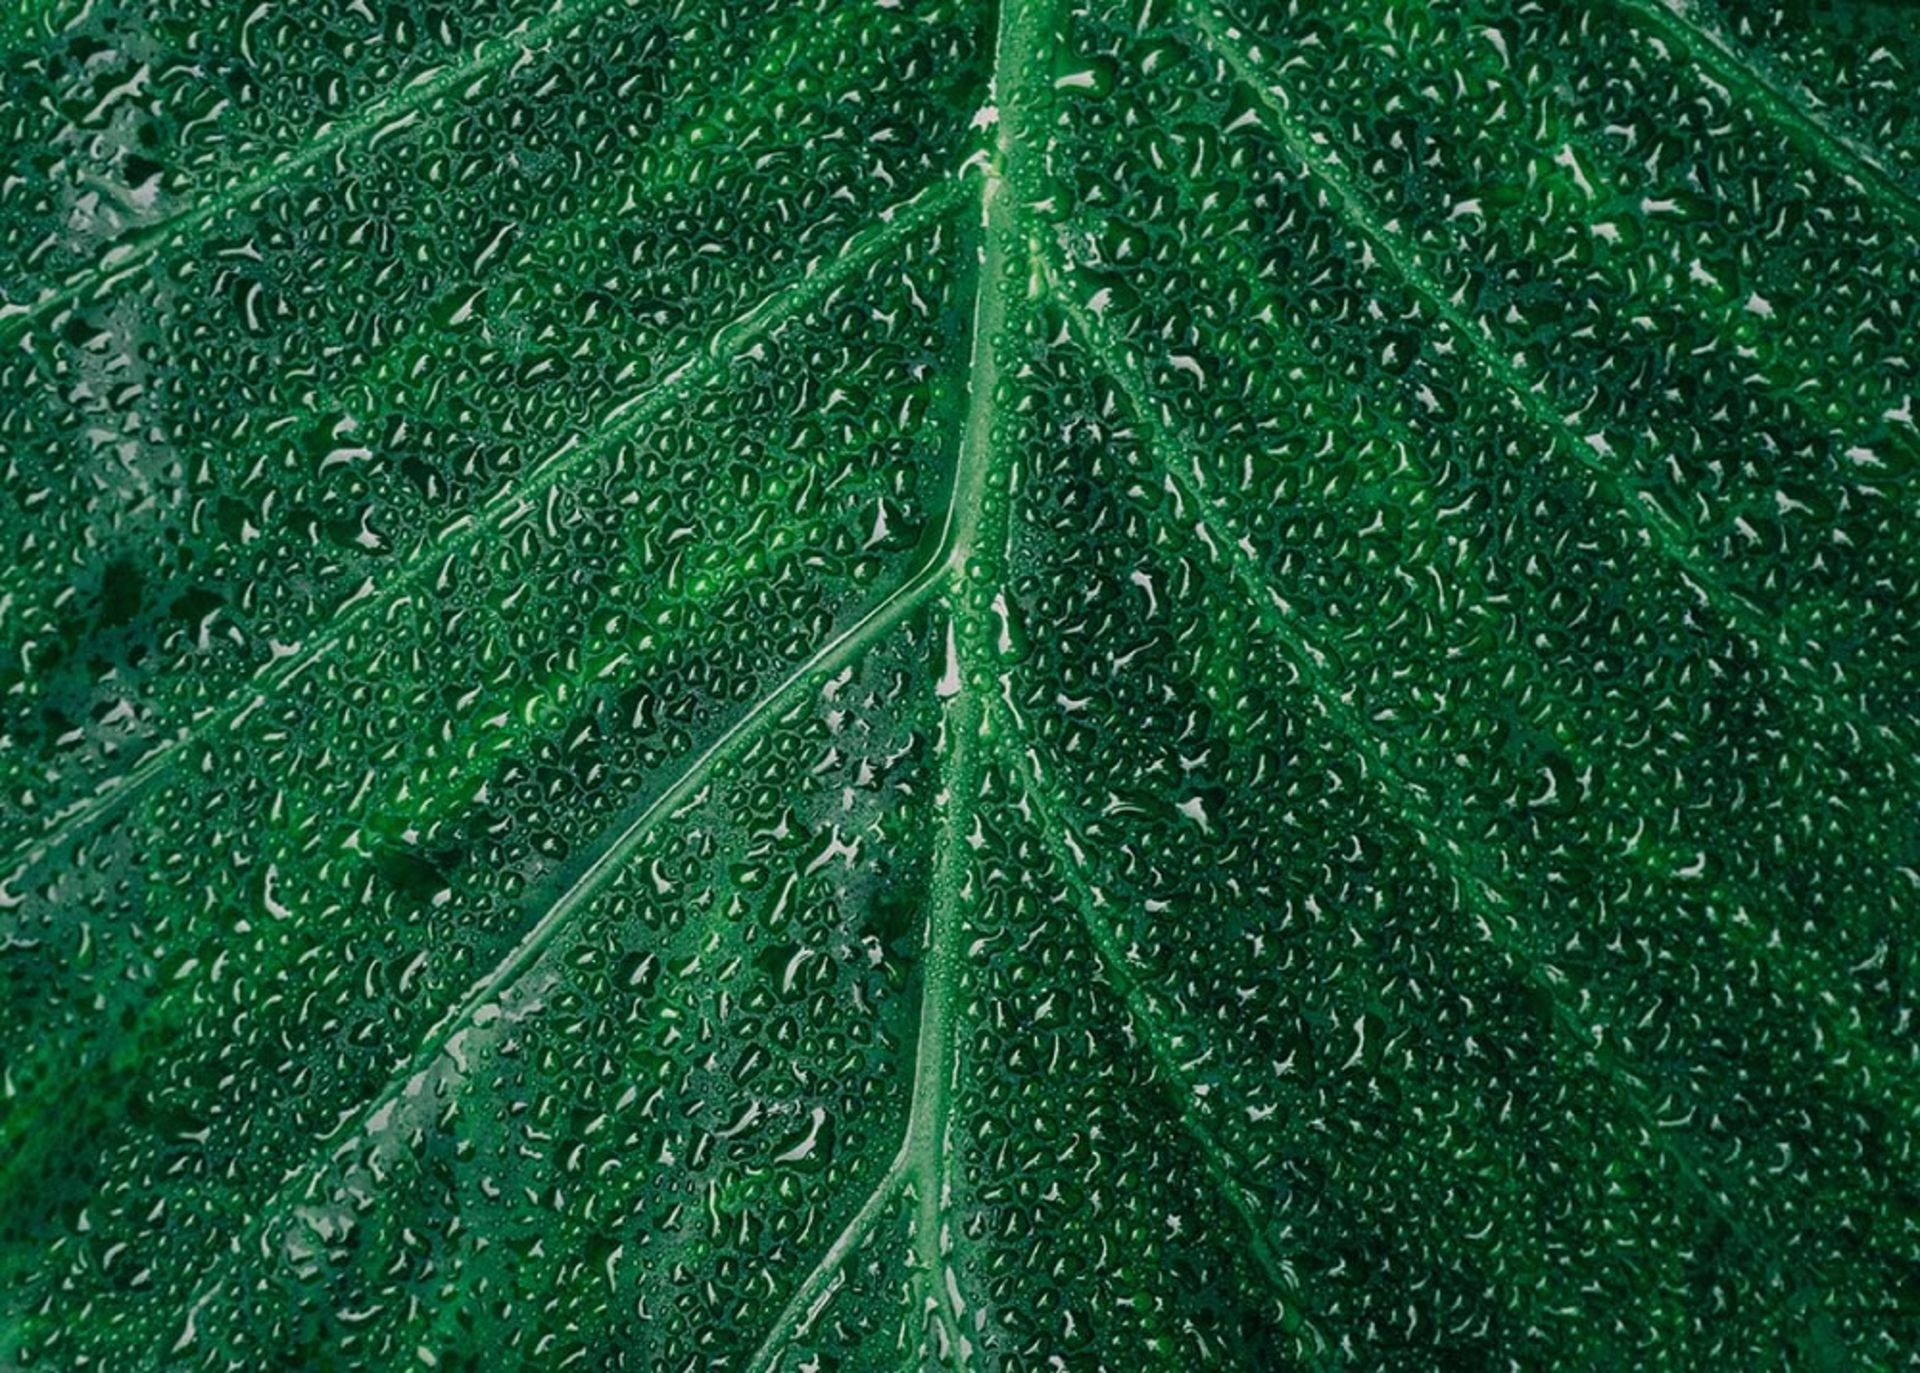 قطرات آب روی برگ سبز